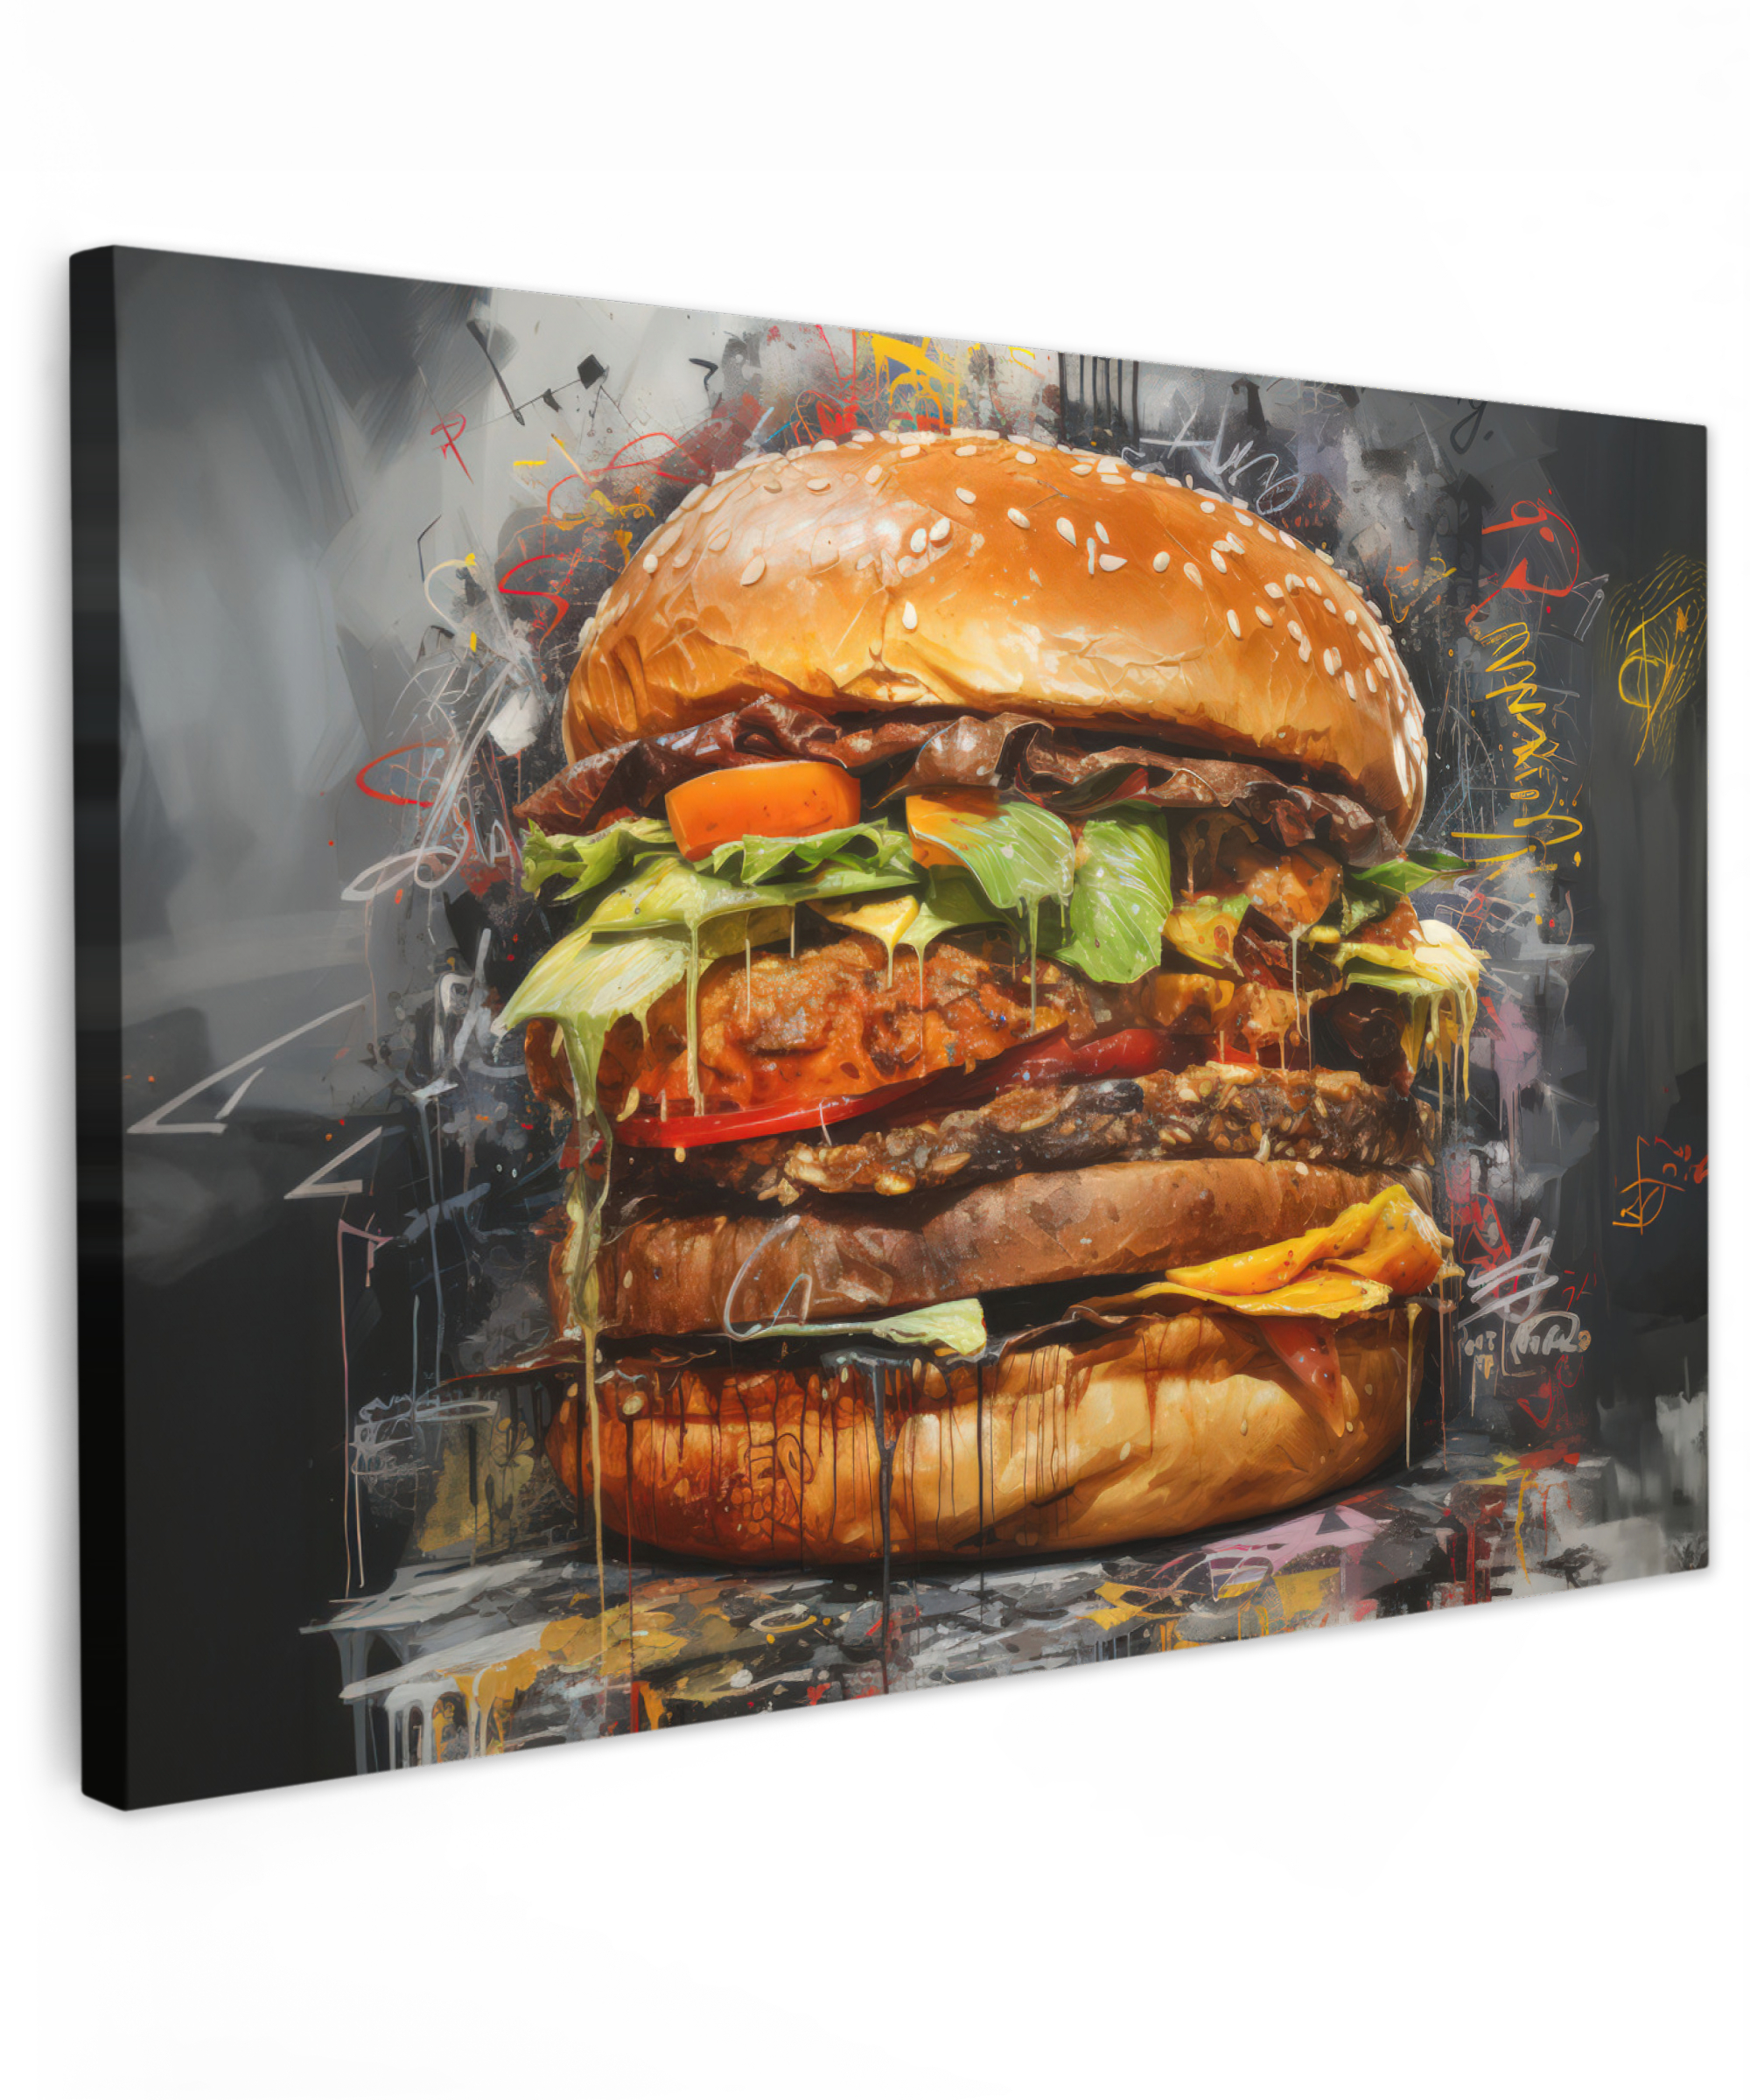 Canvas schilderij - Burger - Eten - Kunst - Grijs - Graffiti